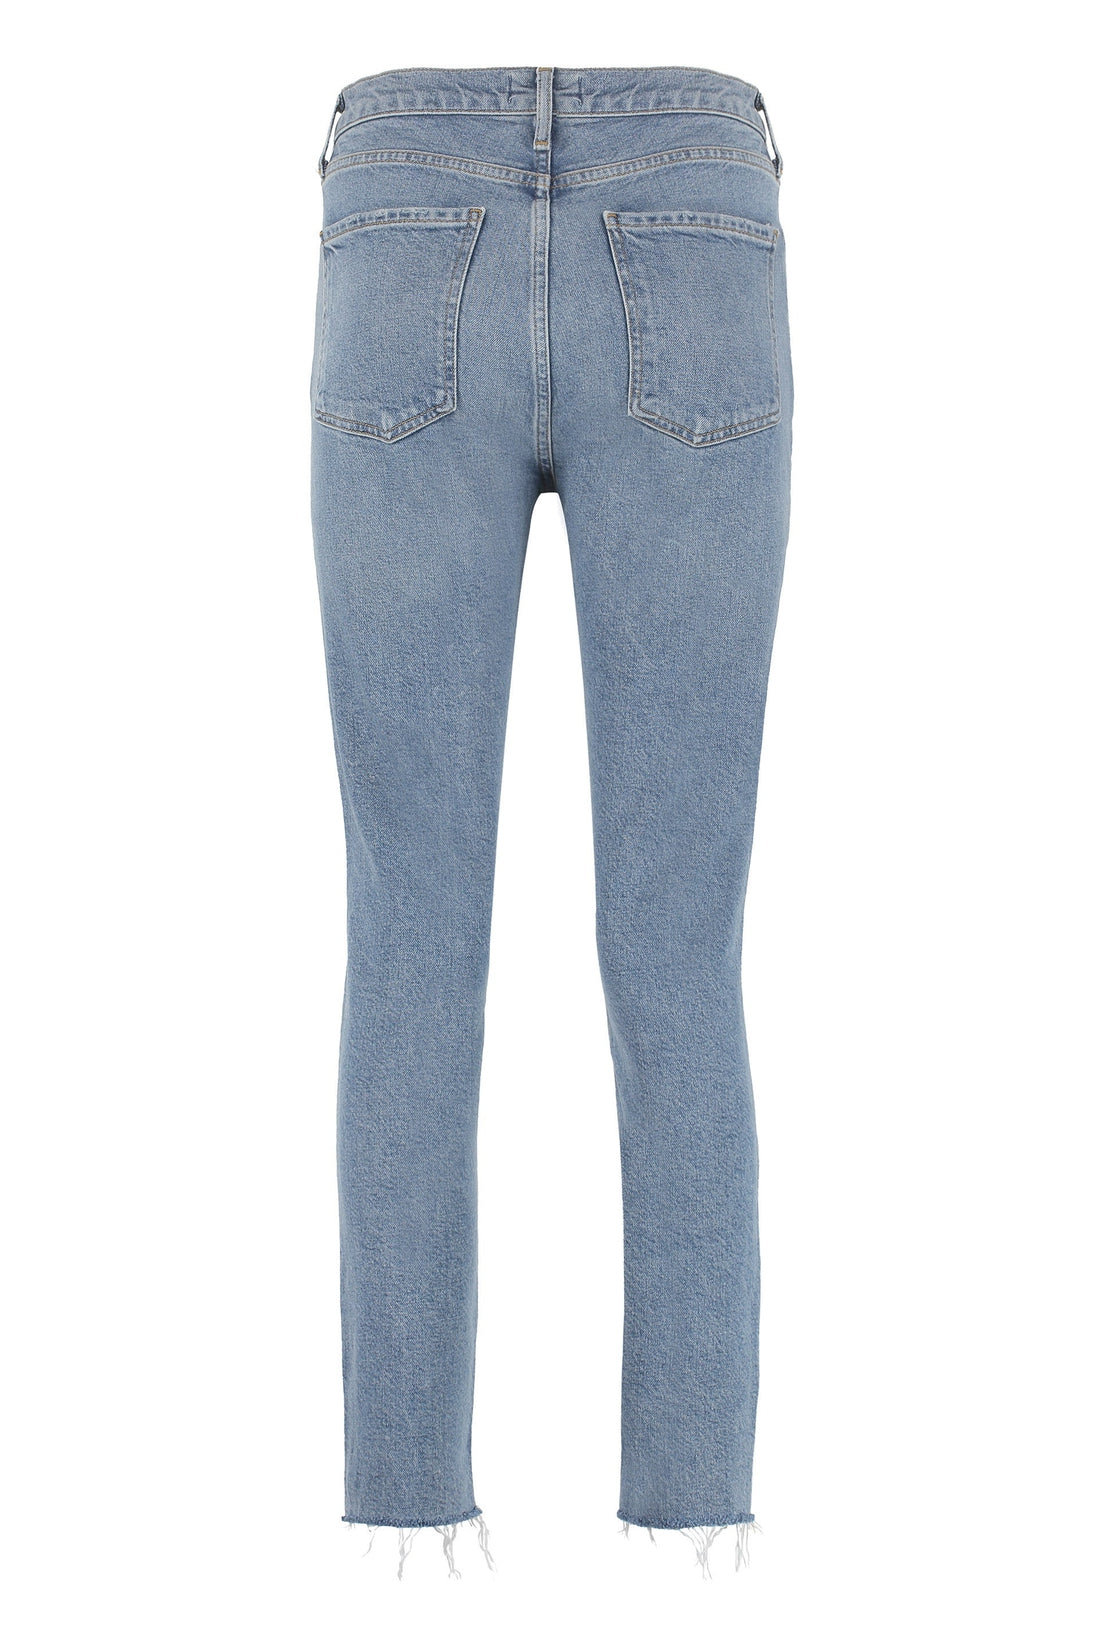 AGOLDE-OUTLET-SALE-Nico slim fit jeans-ARCHIVIST